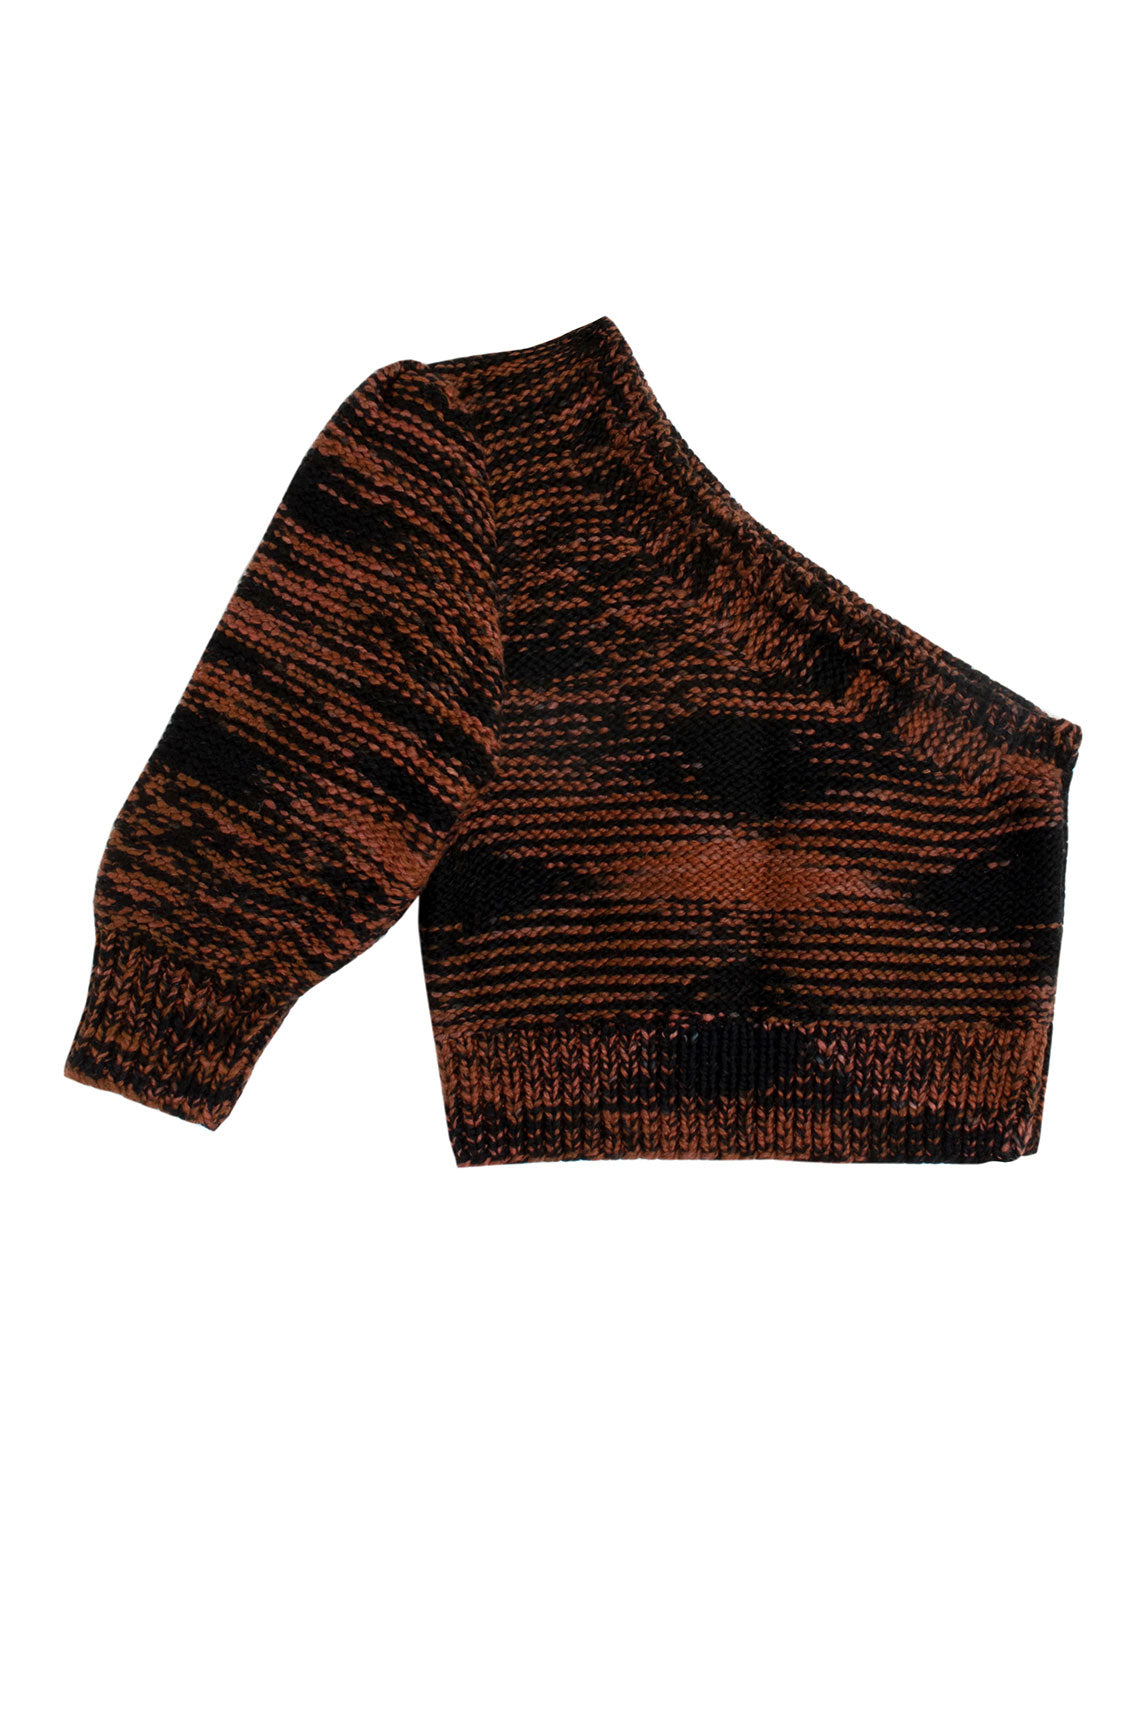 Tortoise Nalini Crop Sweater